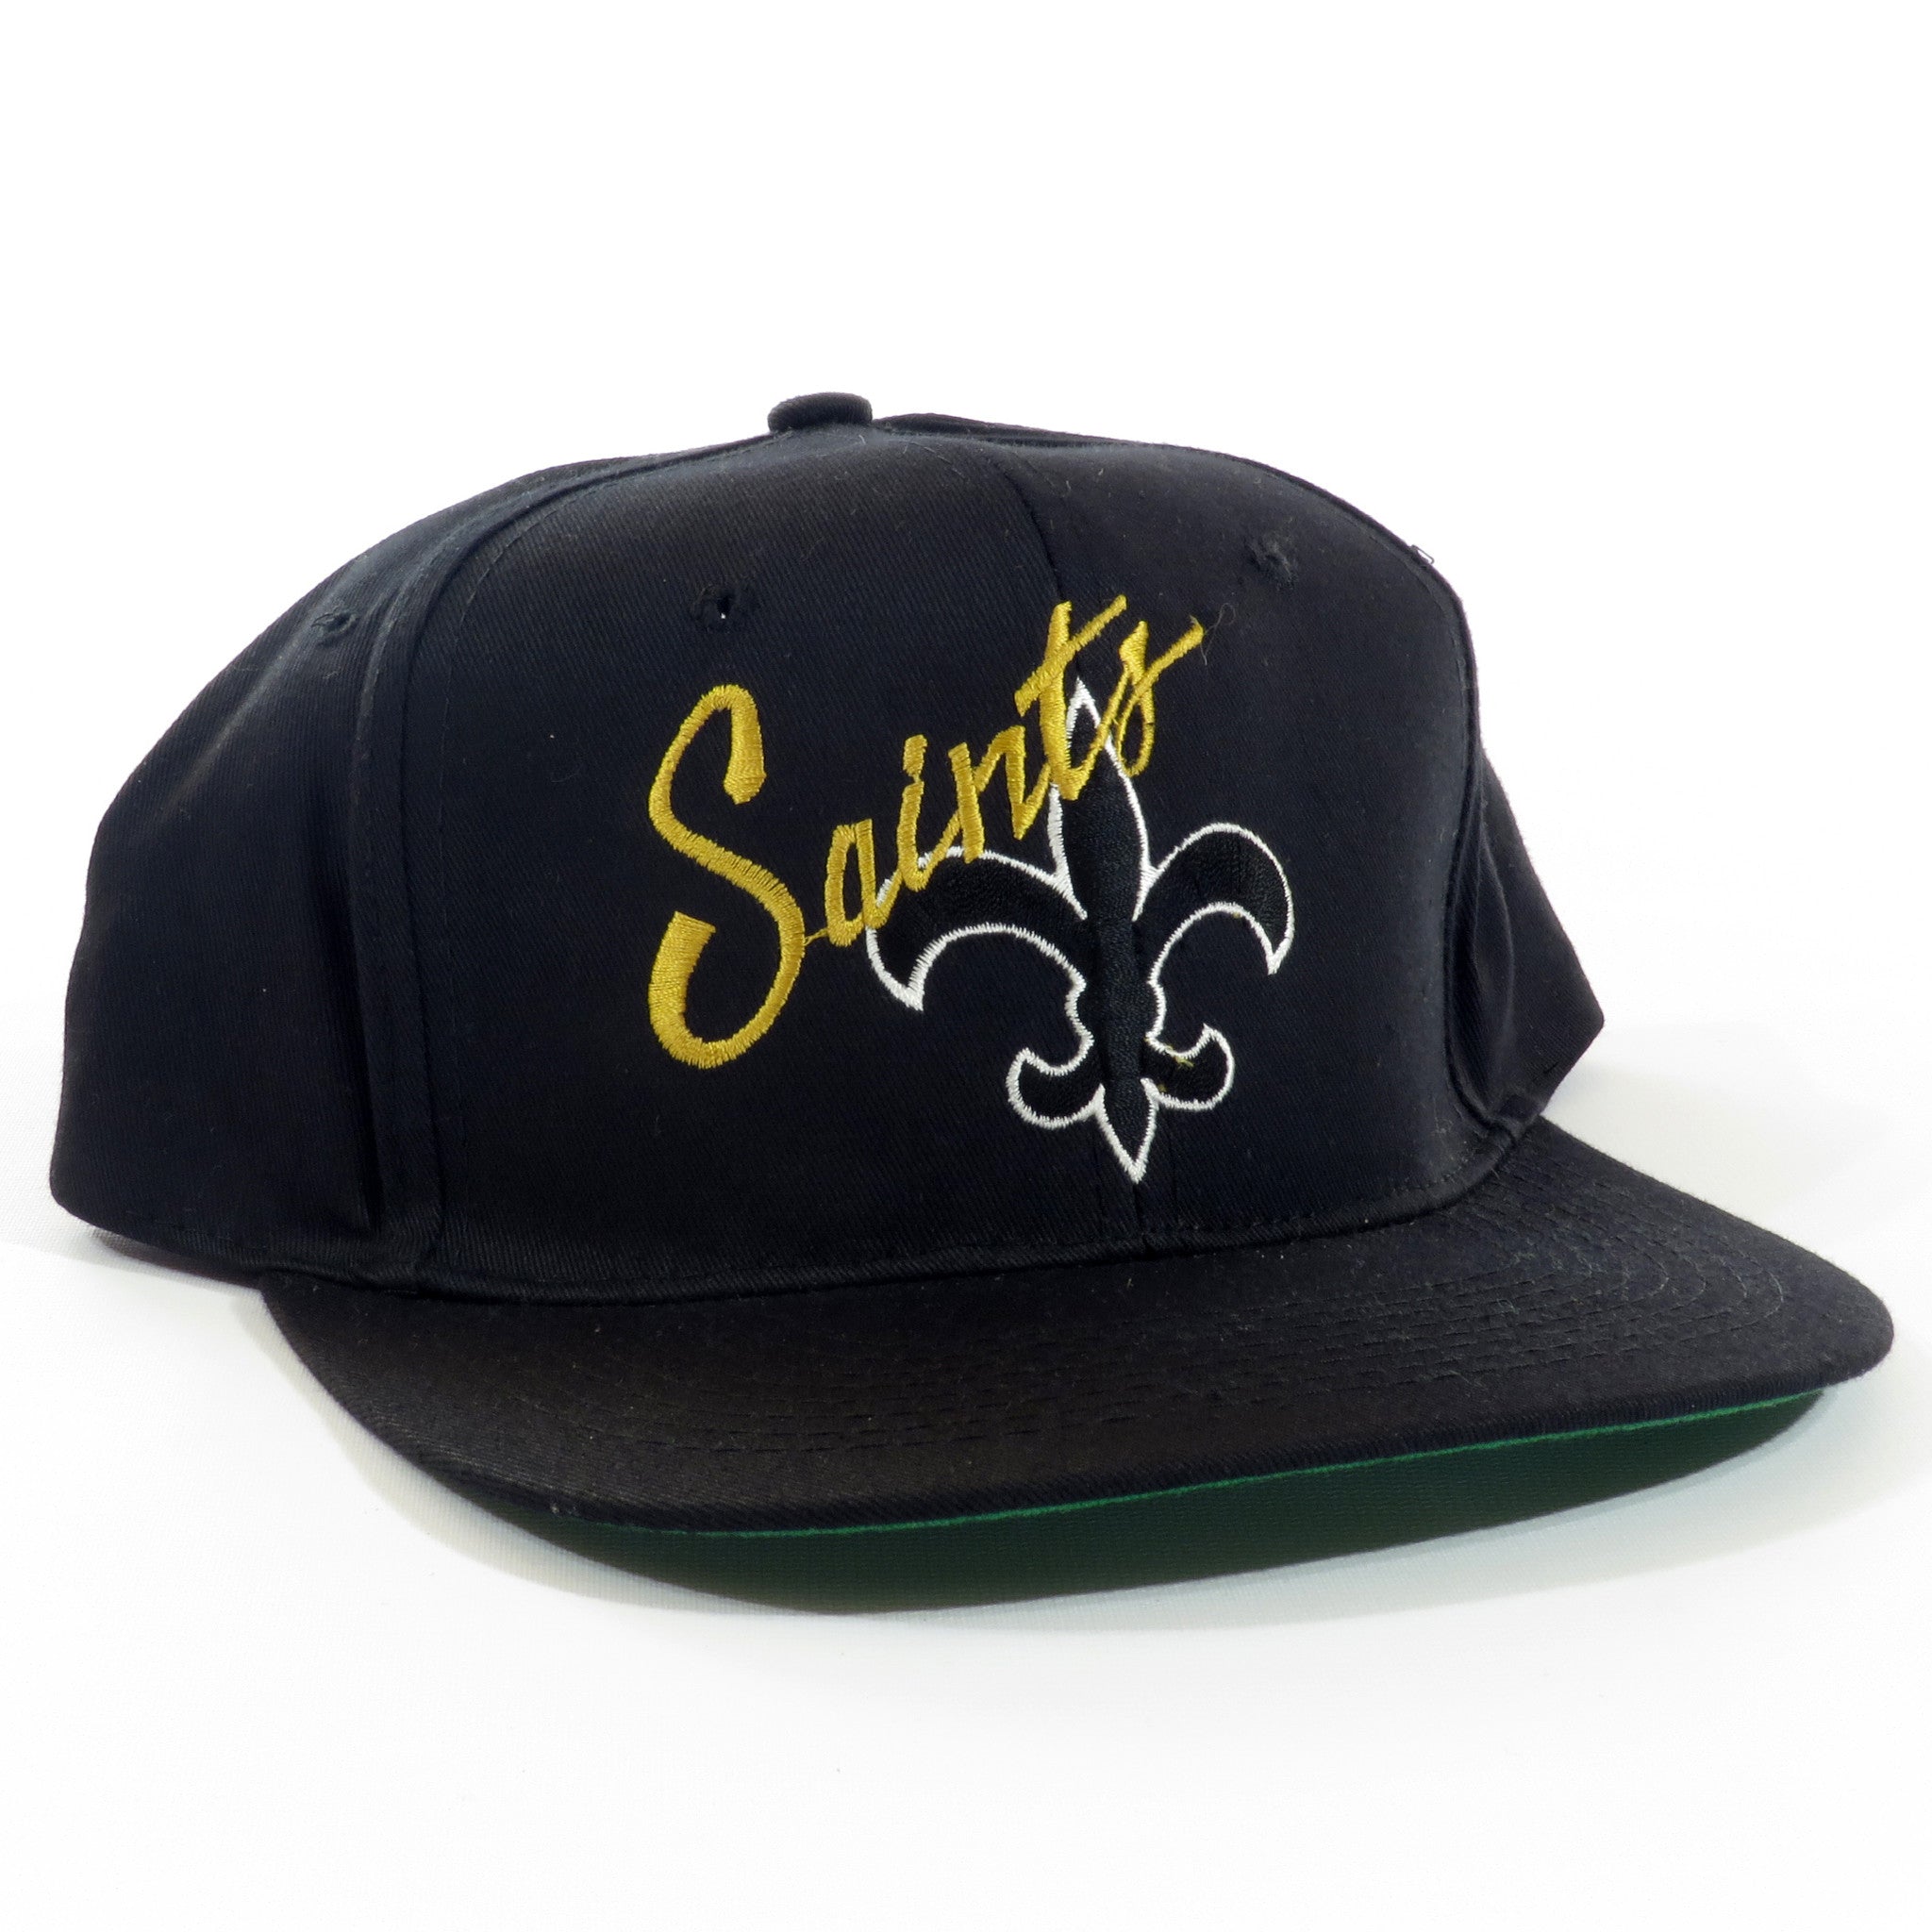 New Orleans Saints Snapback Hat